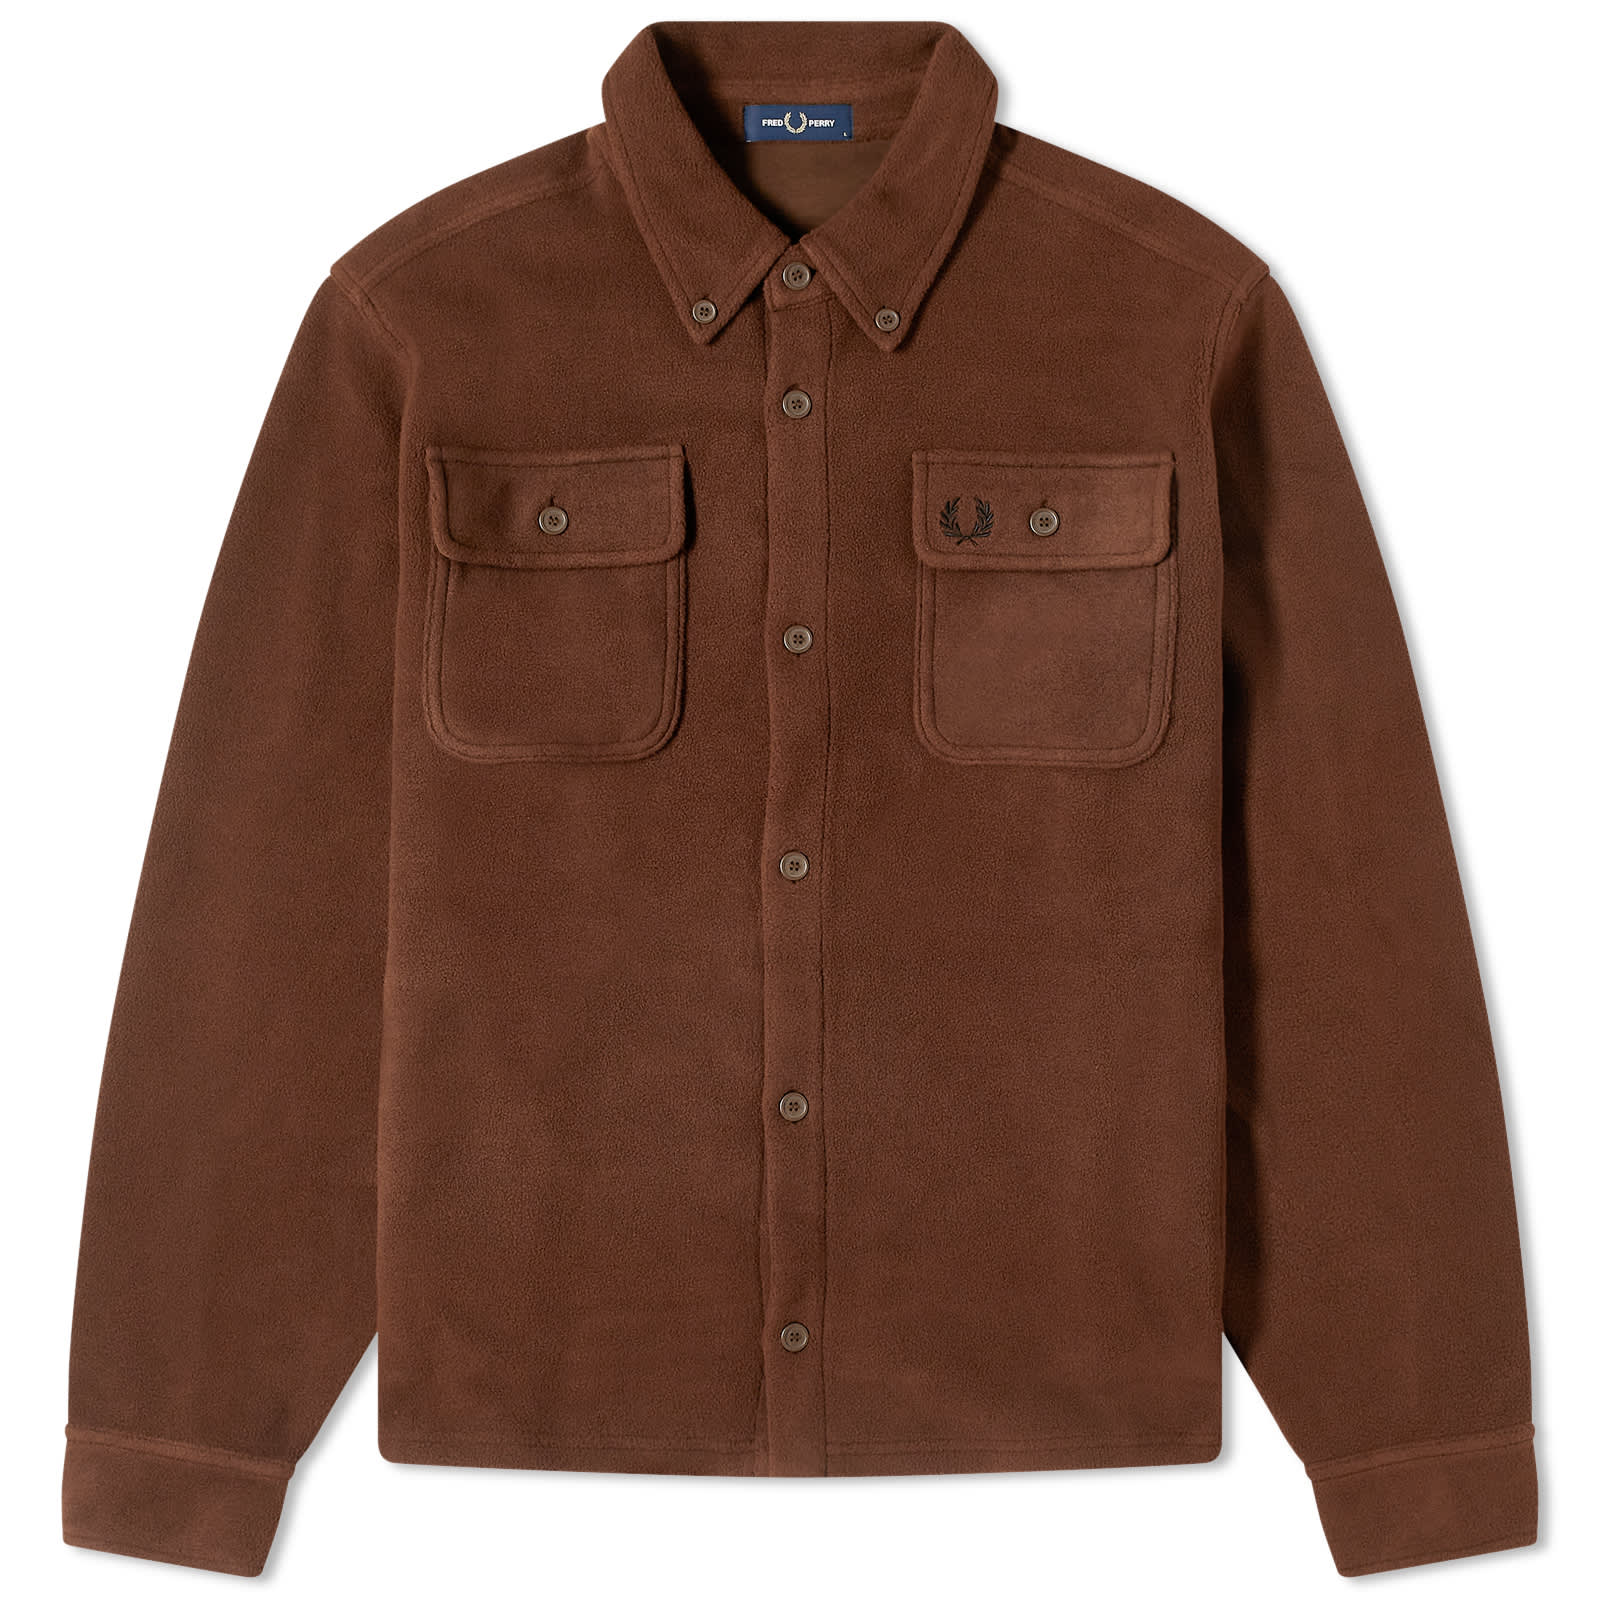 Куртка рубашка Fred Perry Fleece, коричневый куртка рубашка fred perry utility pocket коричневый